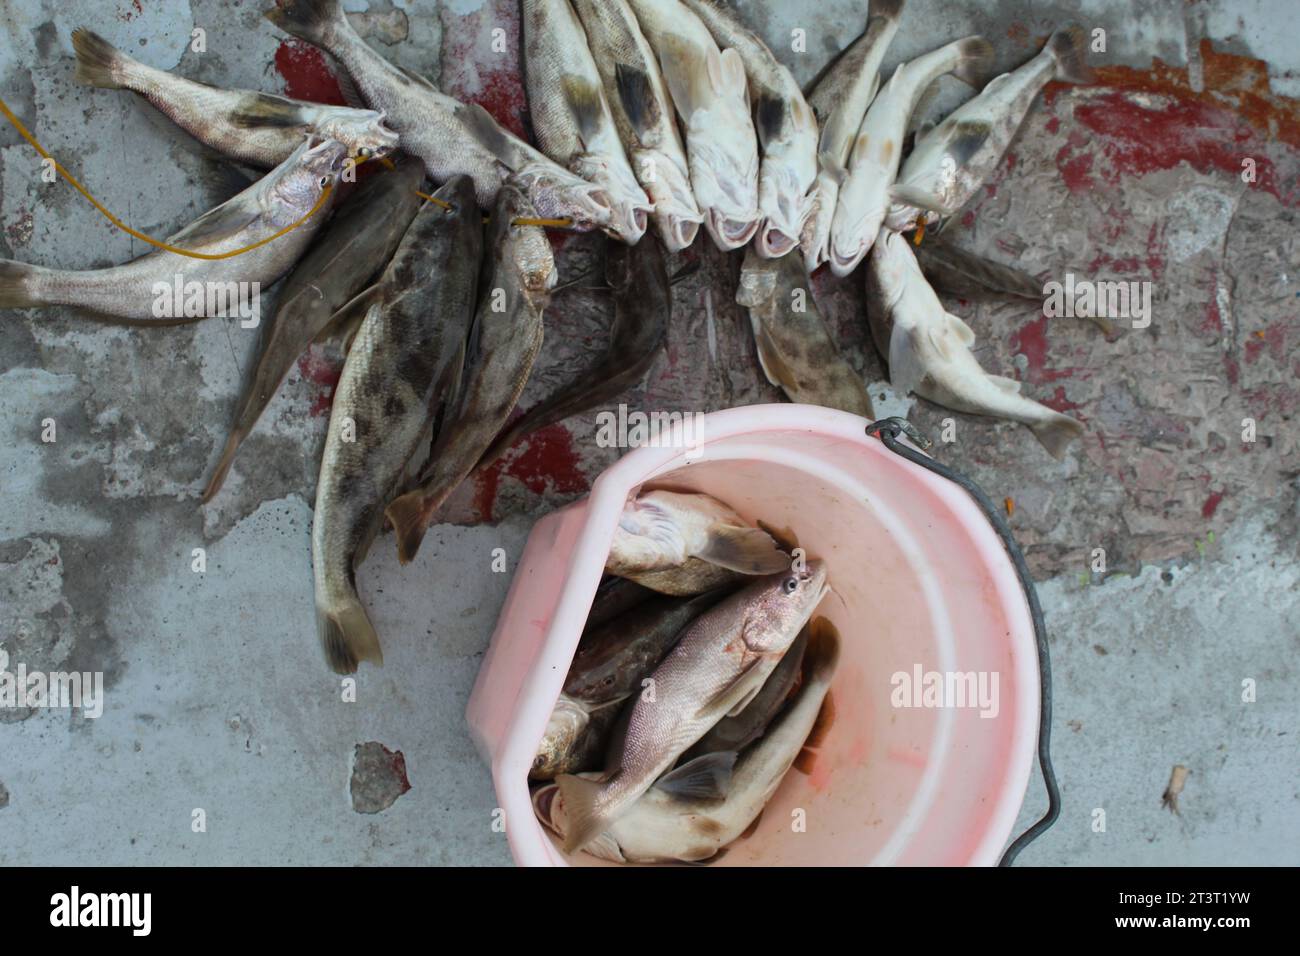 Pesce di merlano catturato e su un filo, pesca, pesca, pesca, pesce catturato Foto Stock